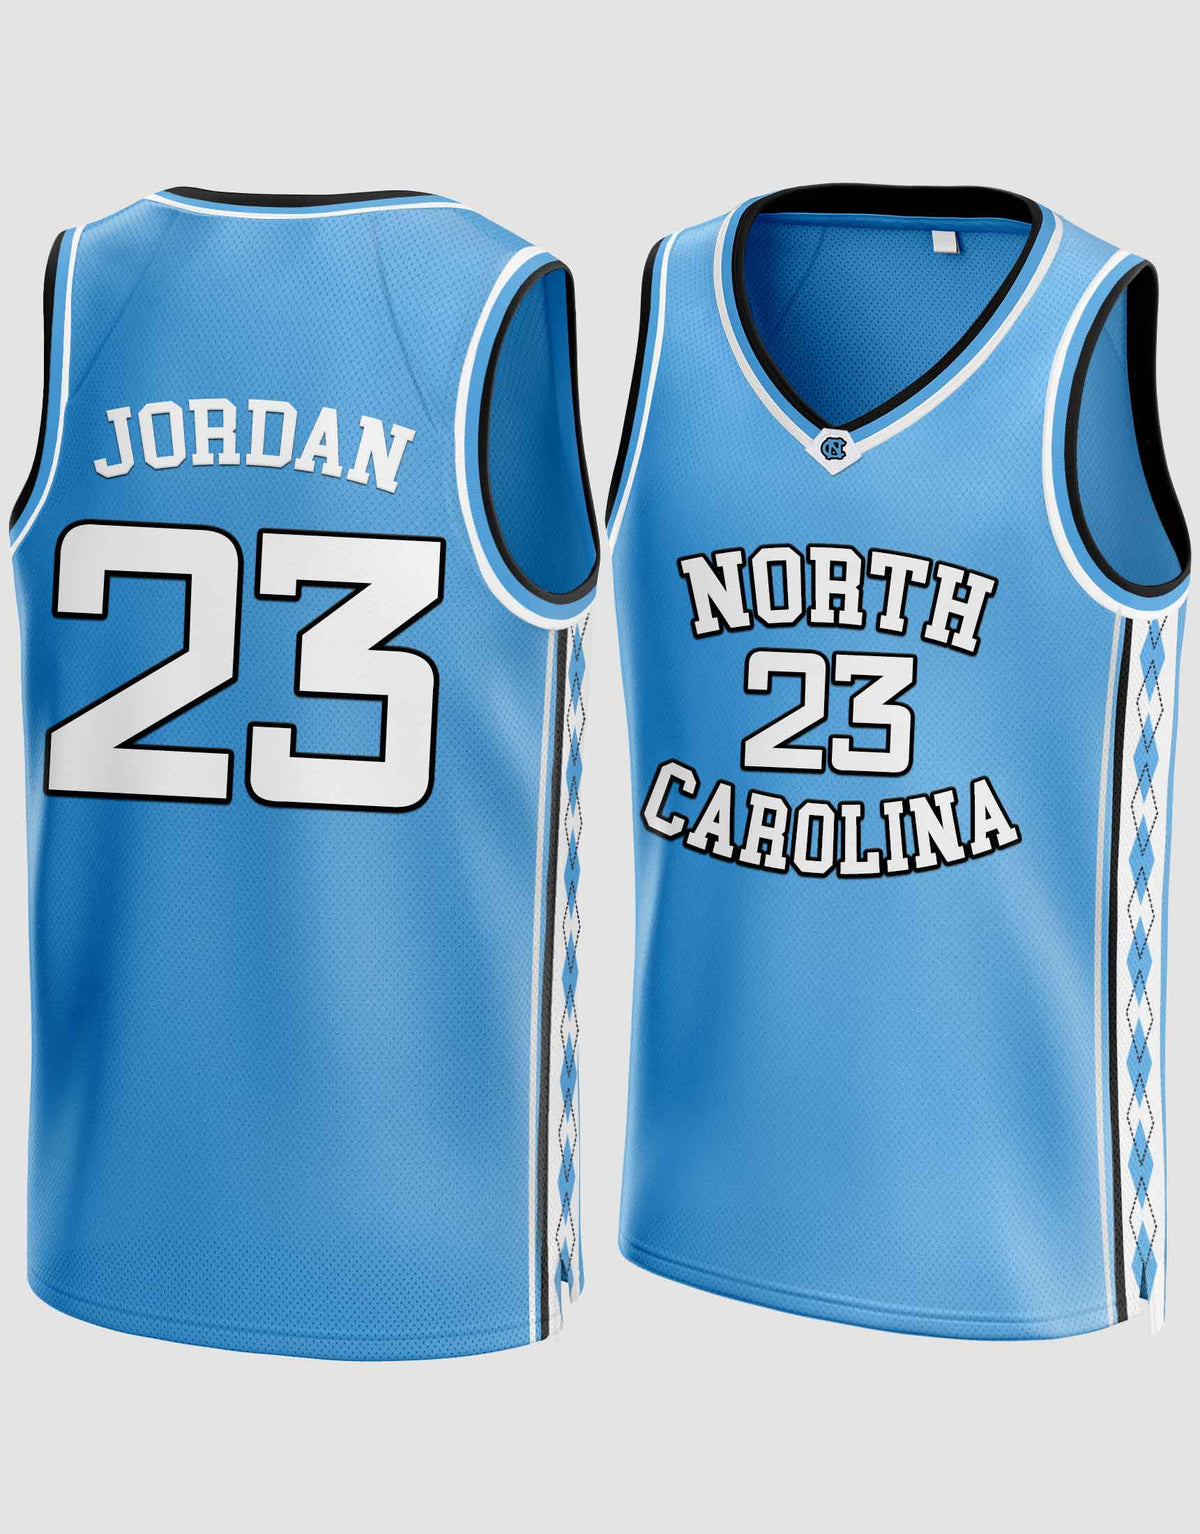 Jersey juvenil de Carolina del Norte Michael Jordan #23